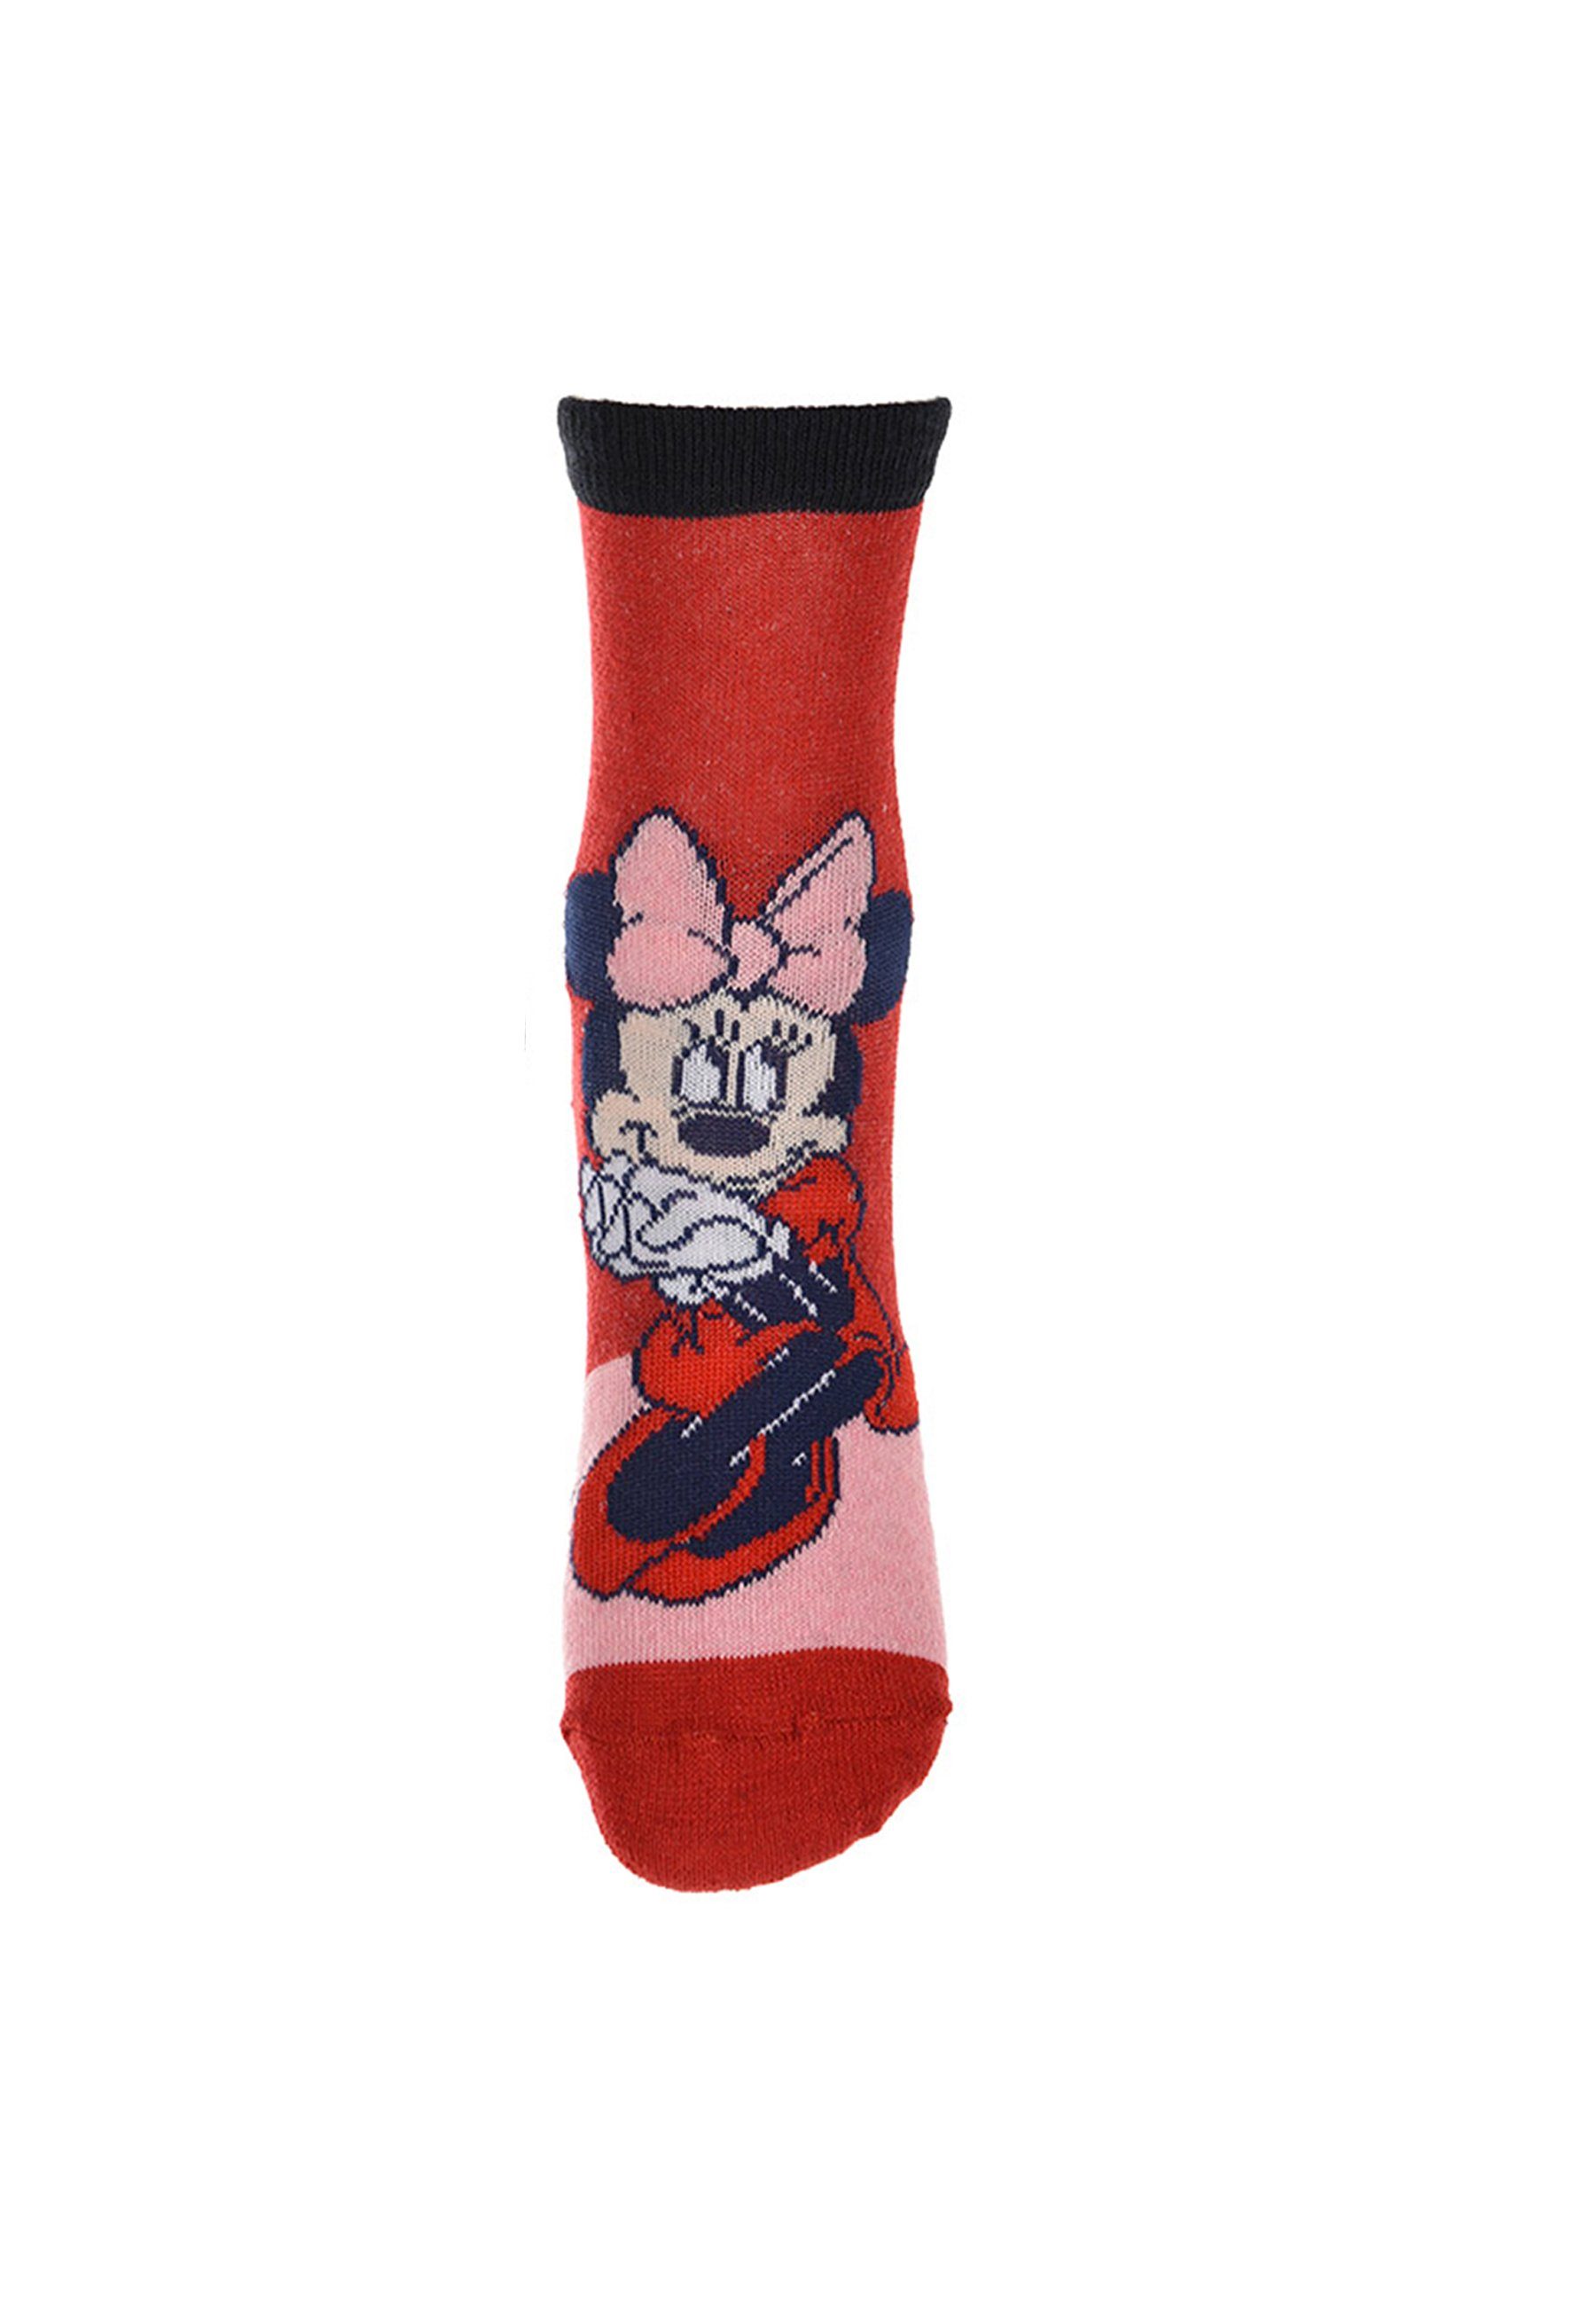 Socken Minnie Mouse Disney Minnie Mädchen Strümpfe Socken Kinder